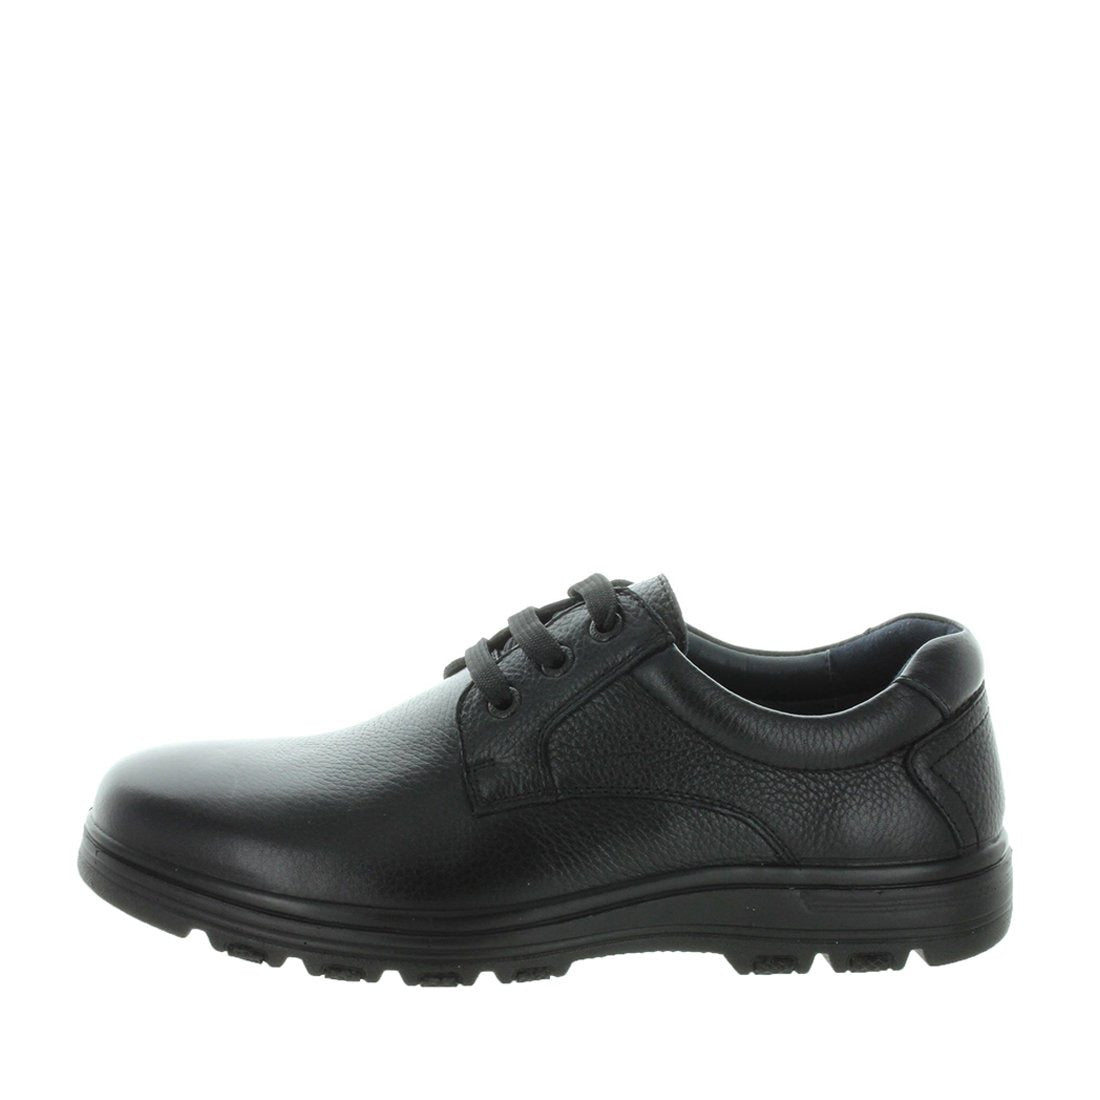 TROIAN by CHURCHILL - iShoes - Men's Shoes, Men's Shoes: Dress - FOOTWEAR-FOOTWEAR